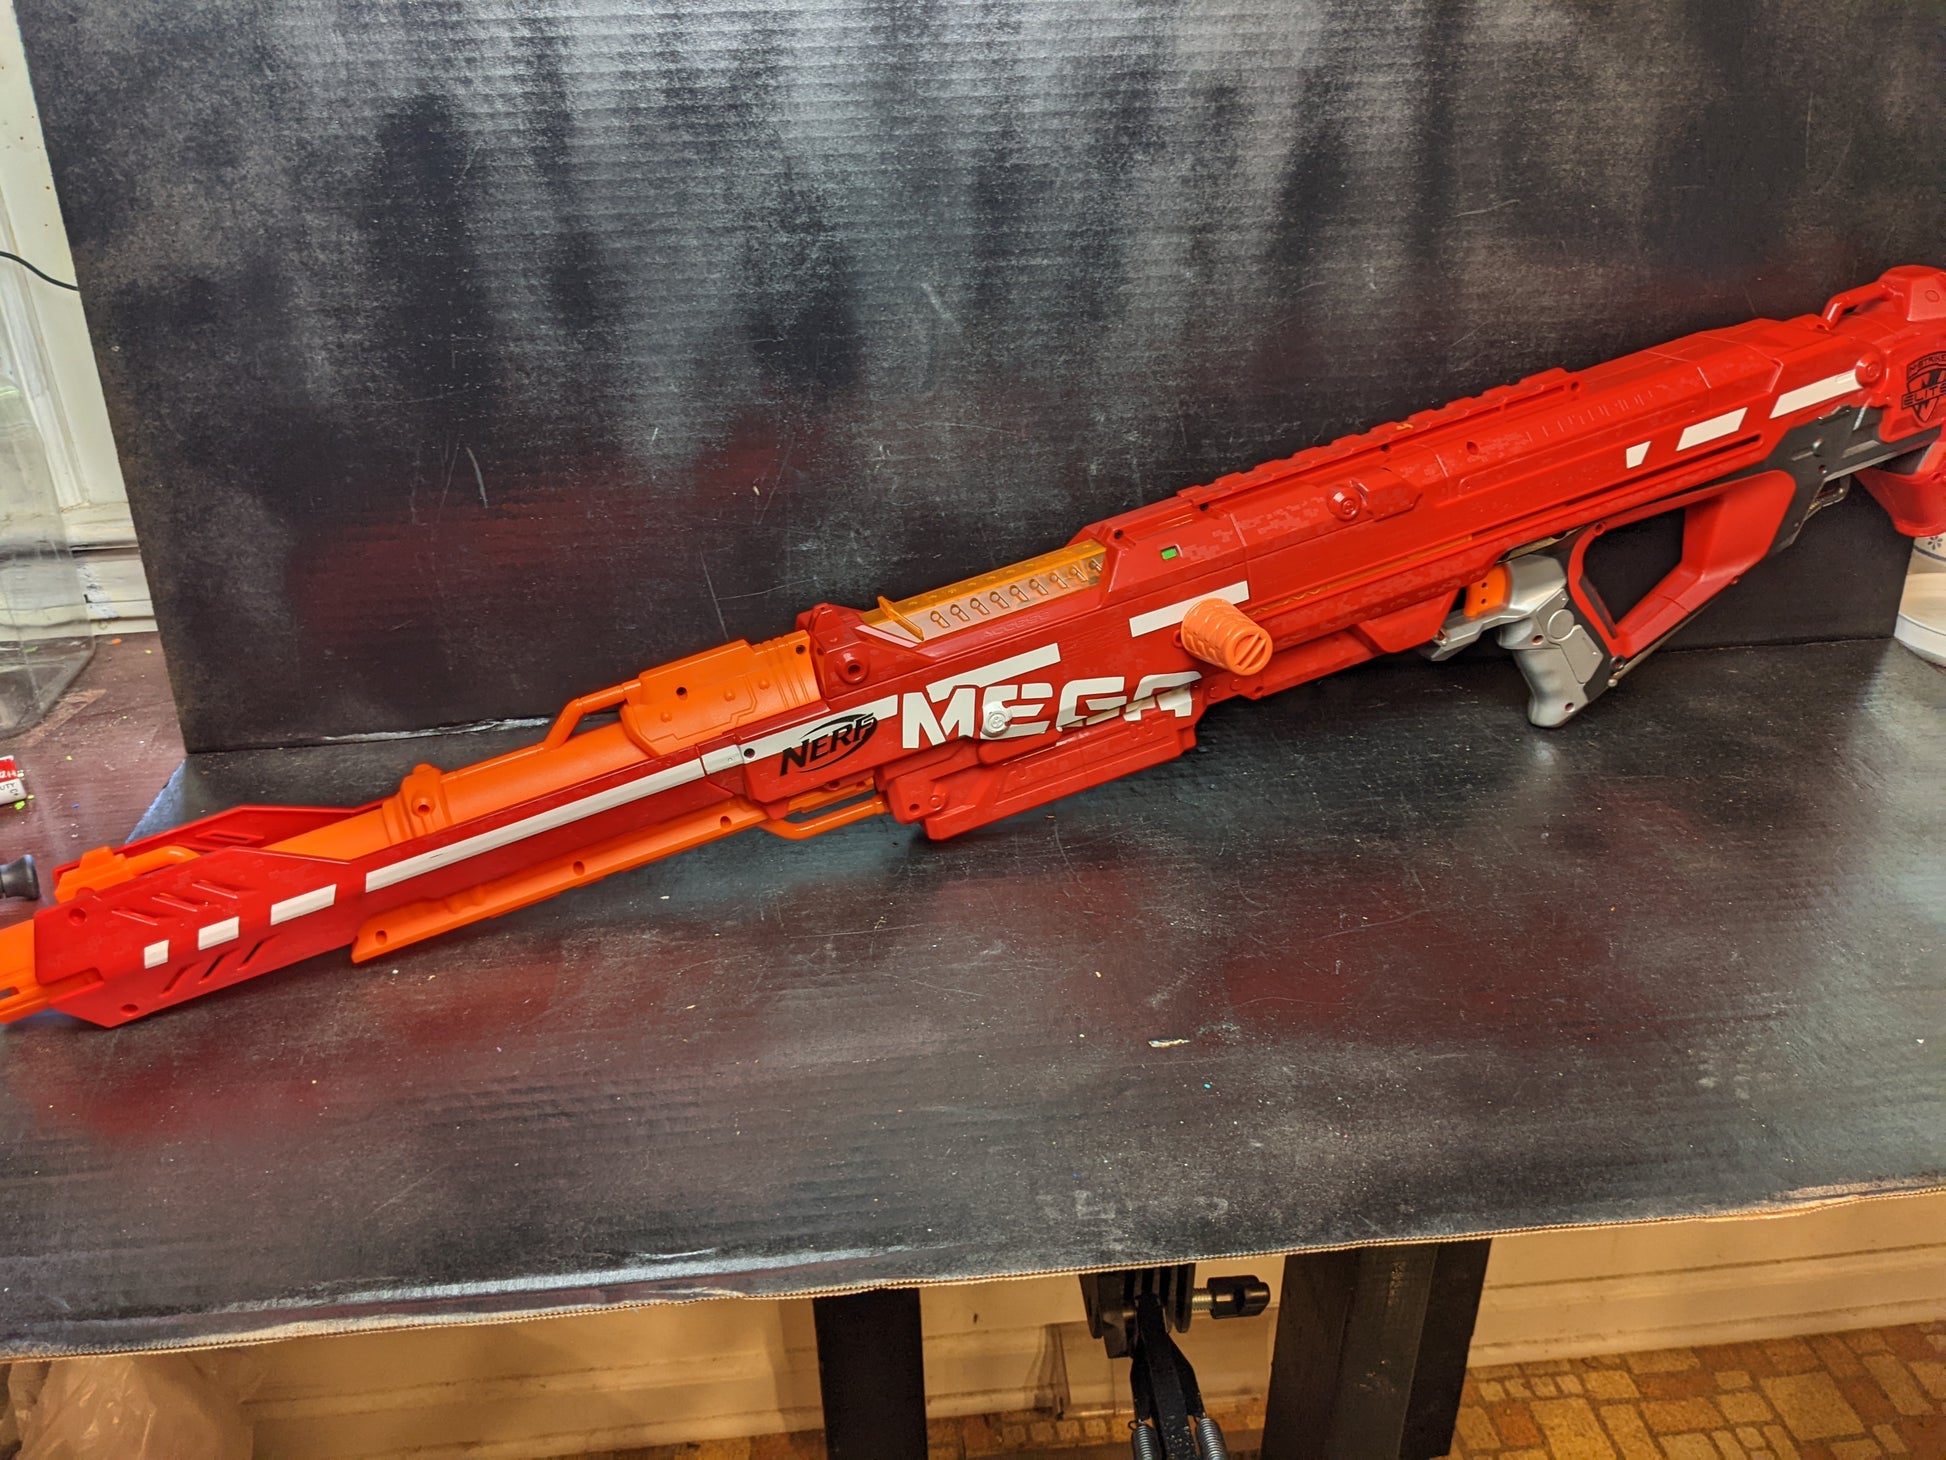 Nerf Mega Centurion Sniper Rifle Blaster Gun